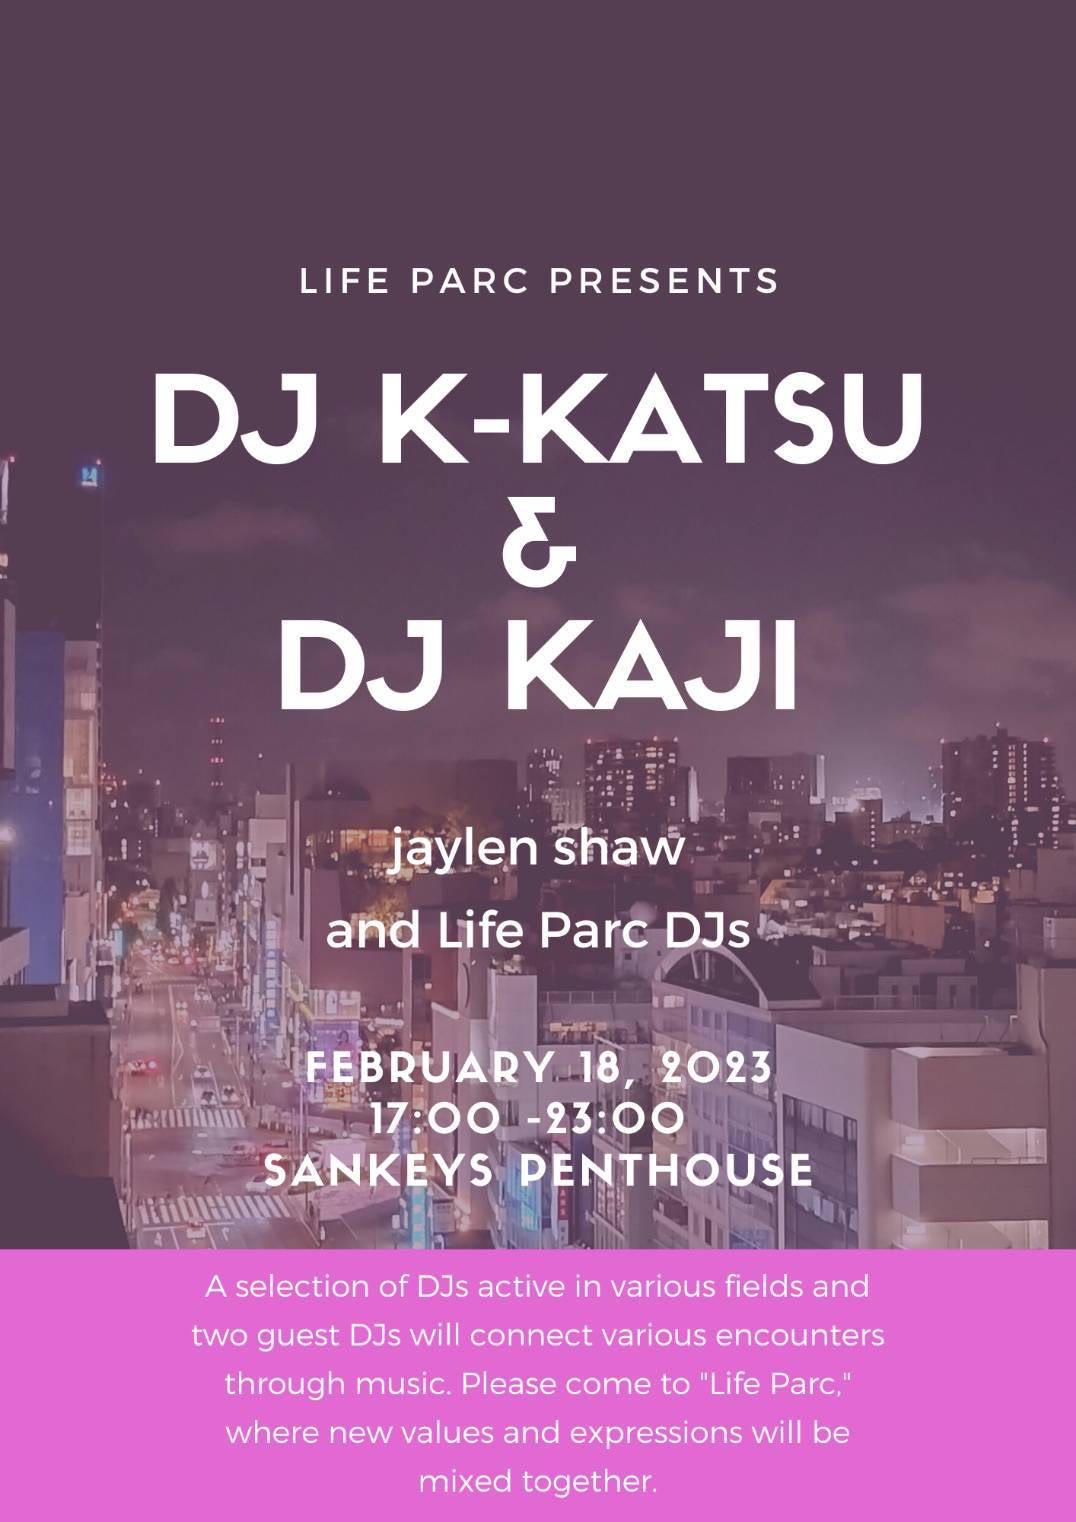 LIFE PARC PRESENTS -DJ K-KATSU & DJ KAJI-